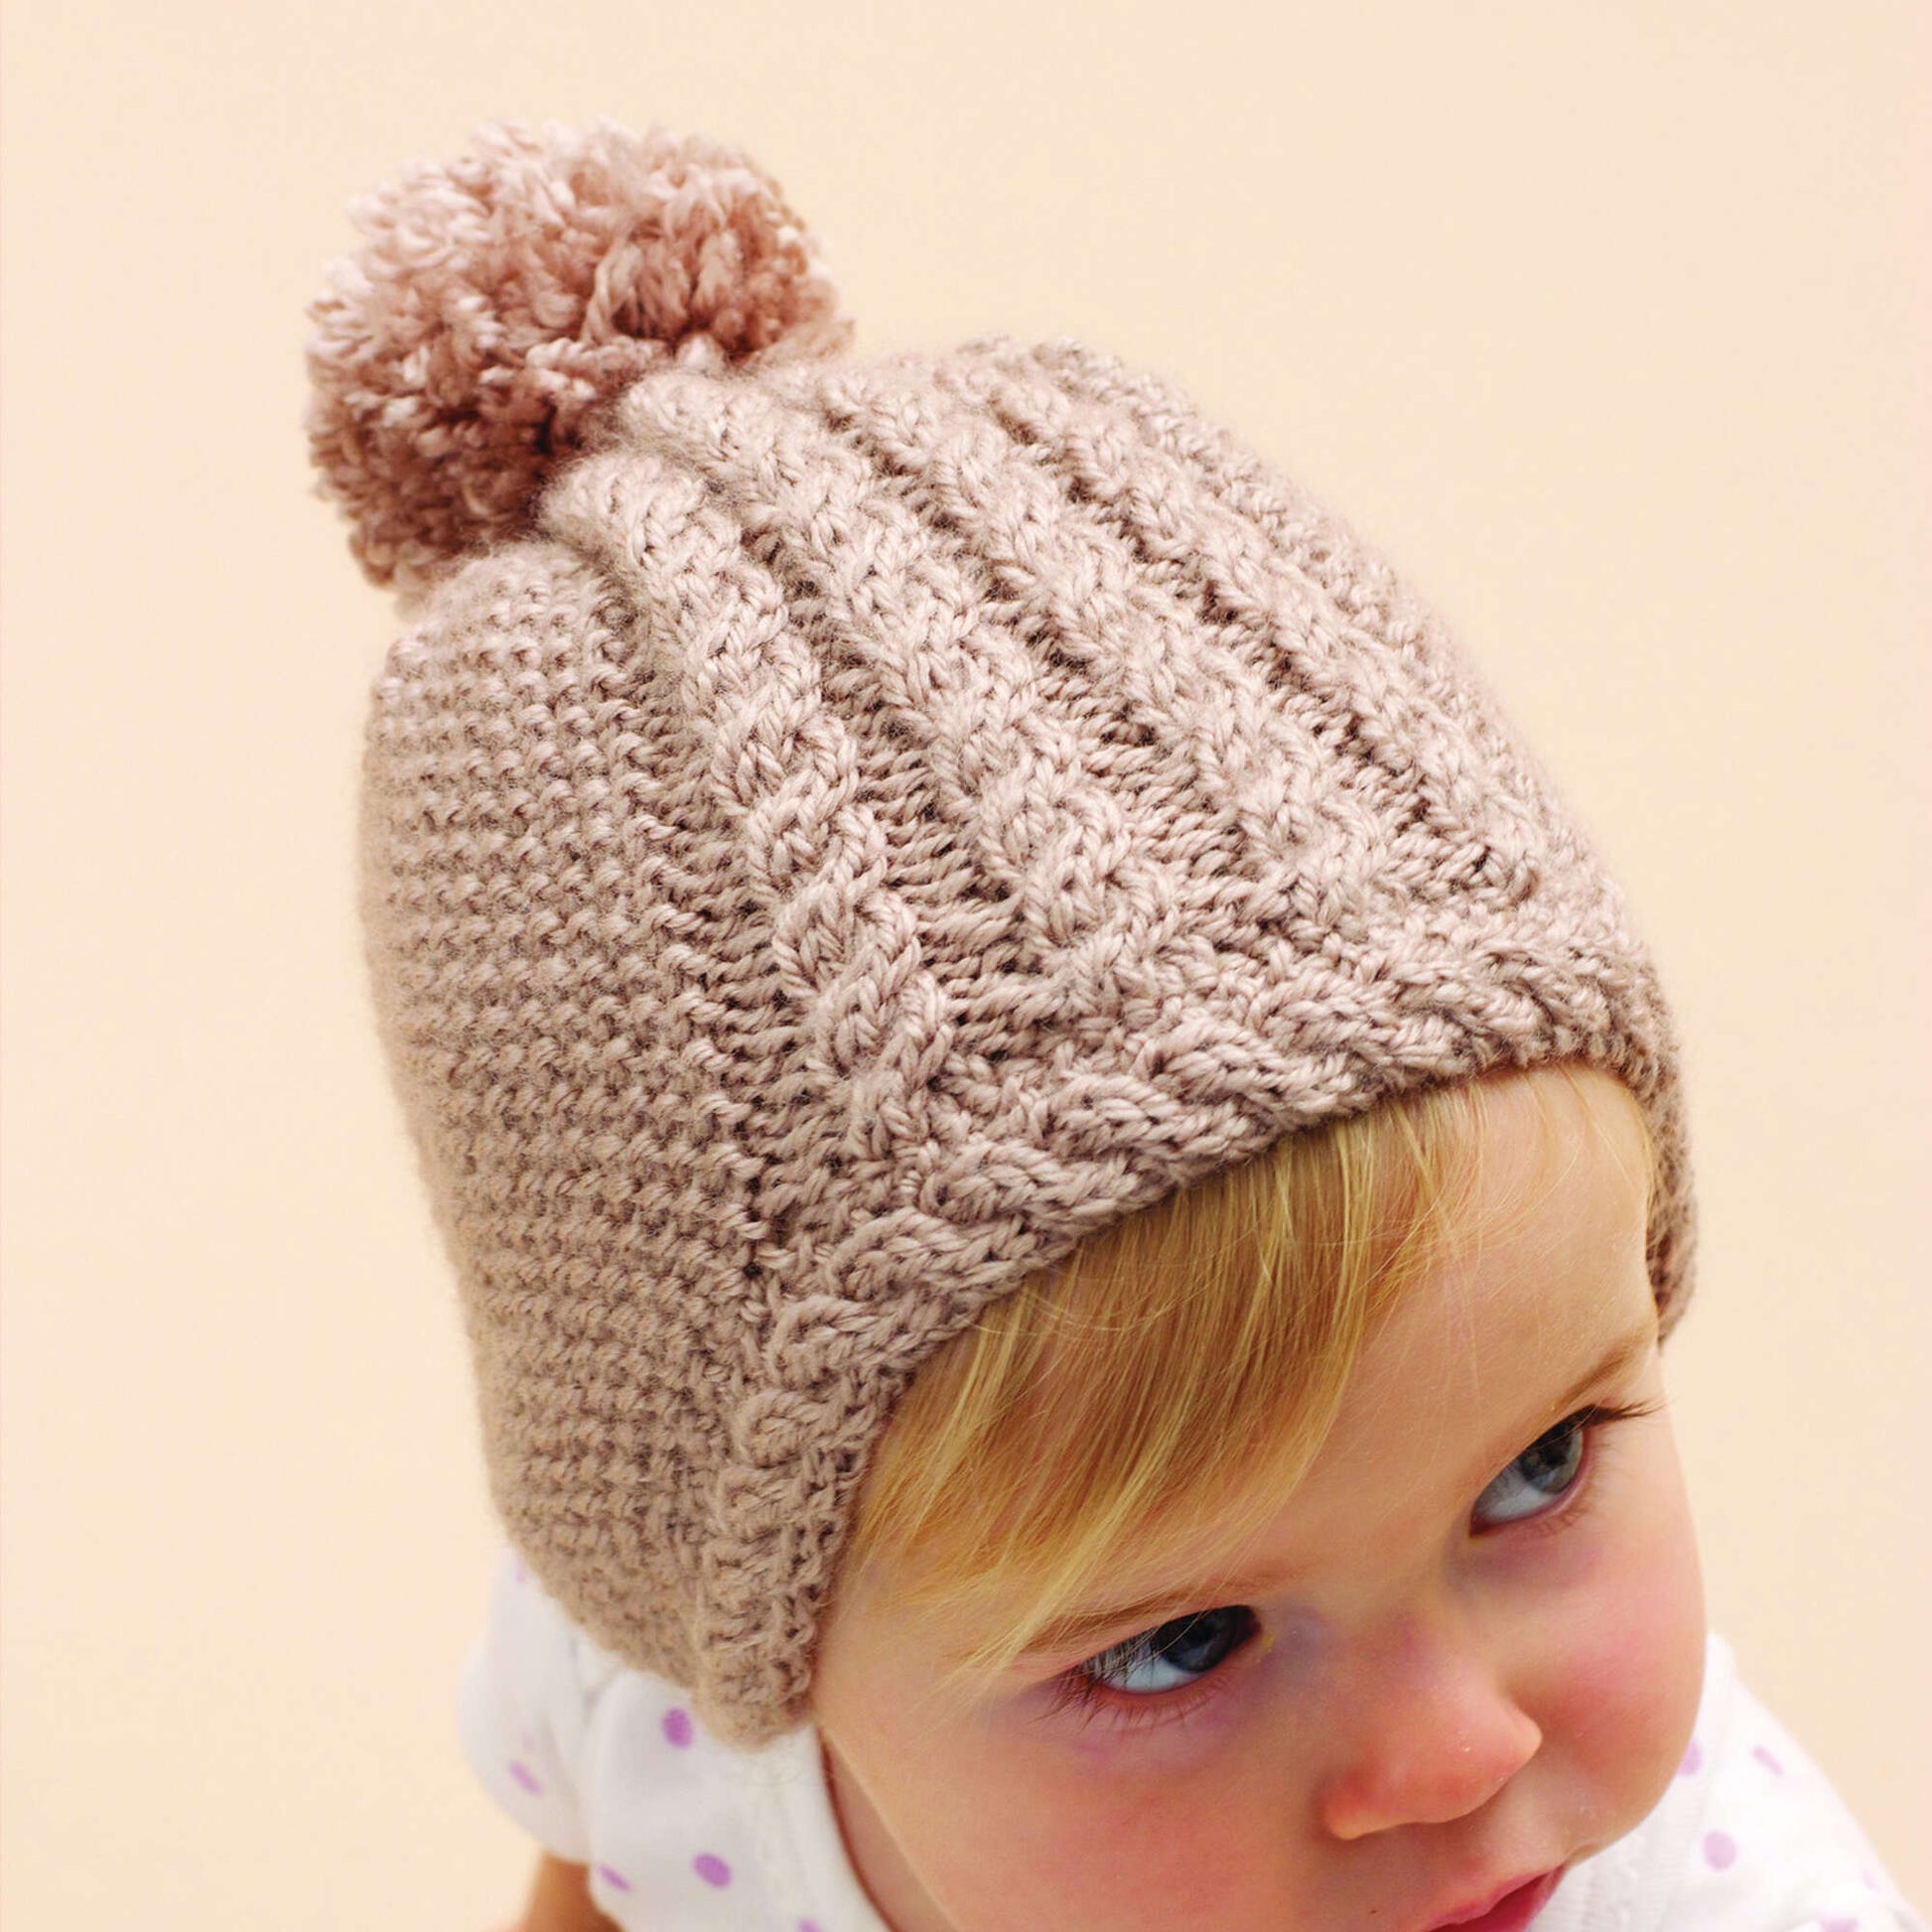 Free Bernat Knit Hat For Little Ears Pattern